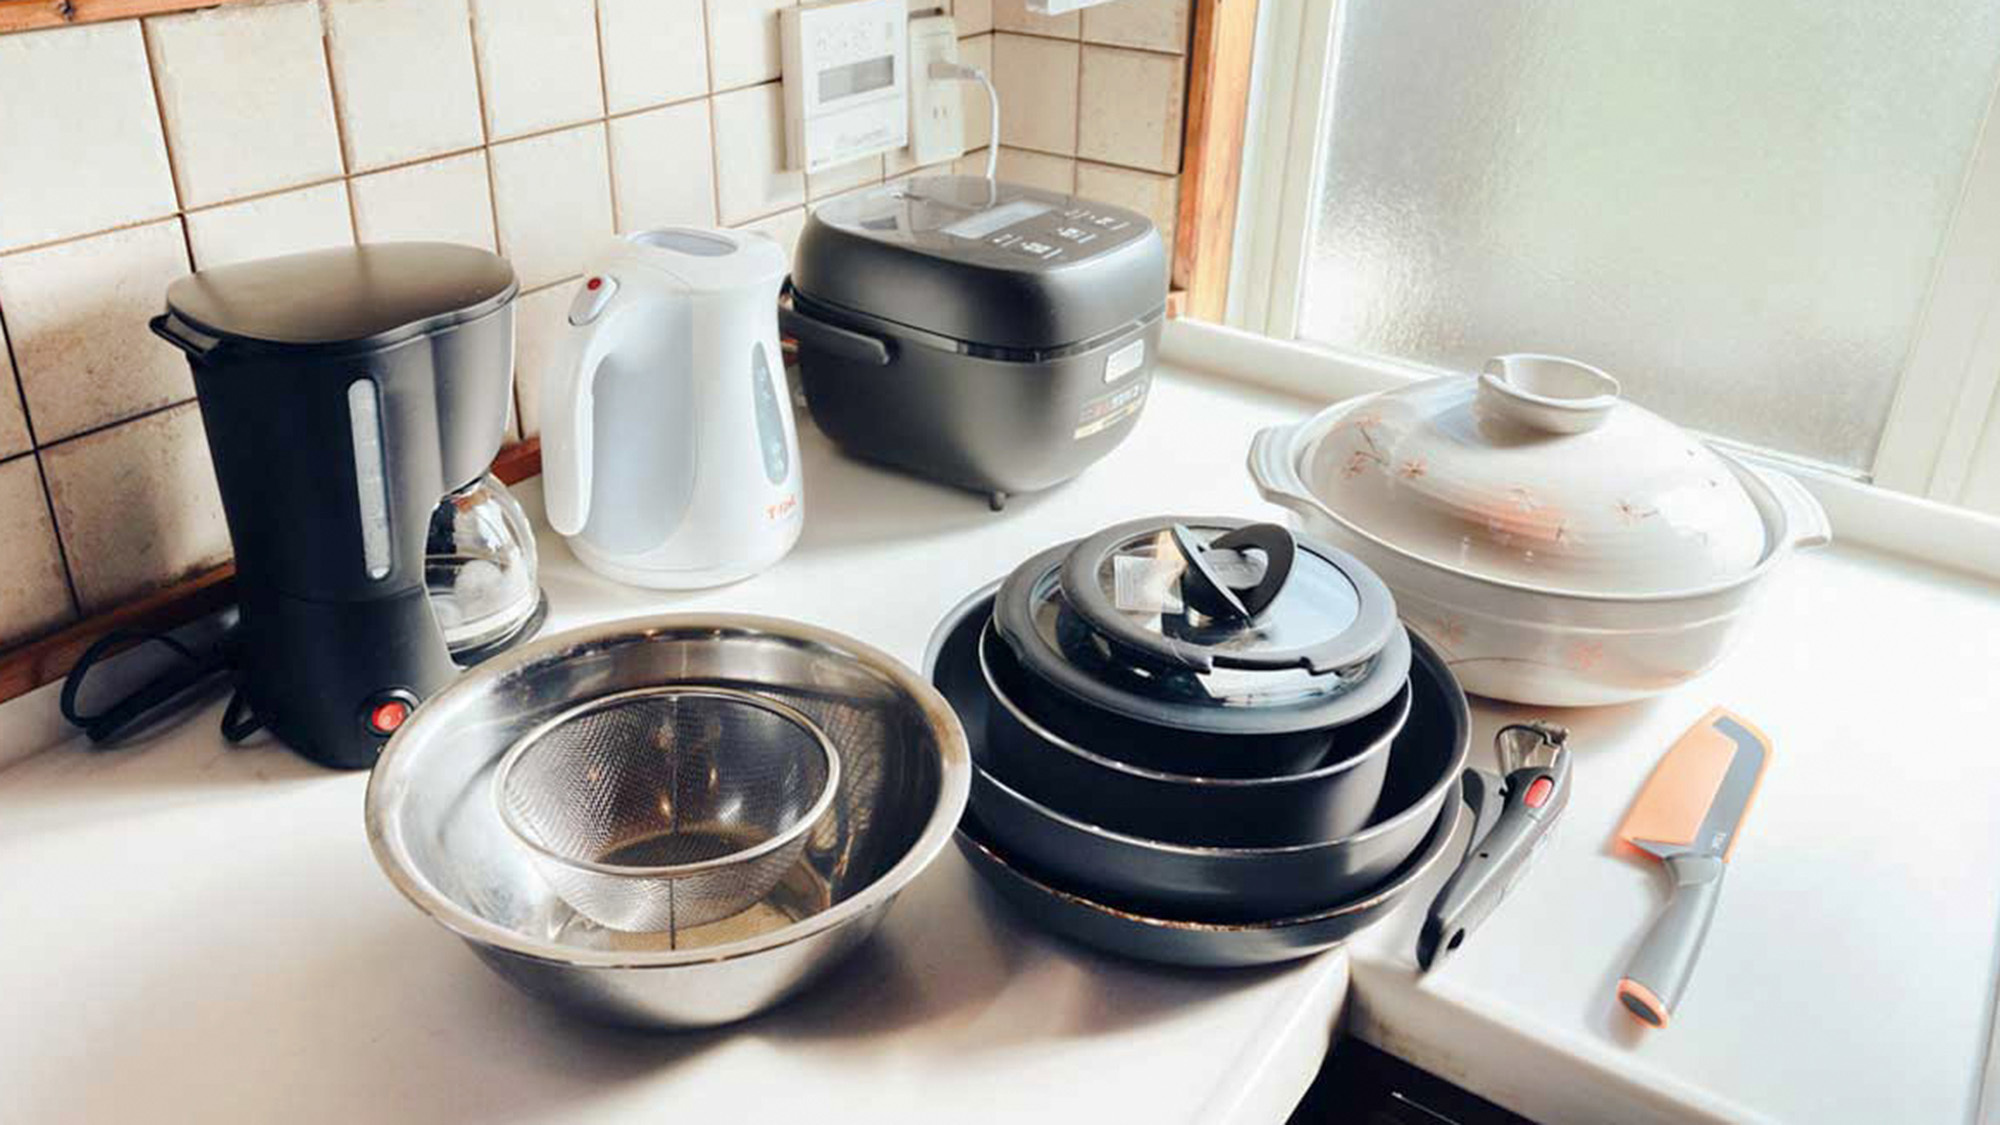 ・【キッチン】フライパンやお鍋などの調理器具のご用意、お荷物の心配は不要です